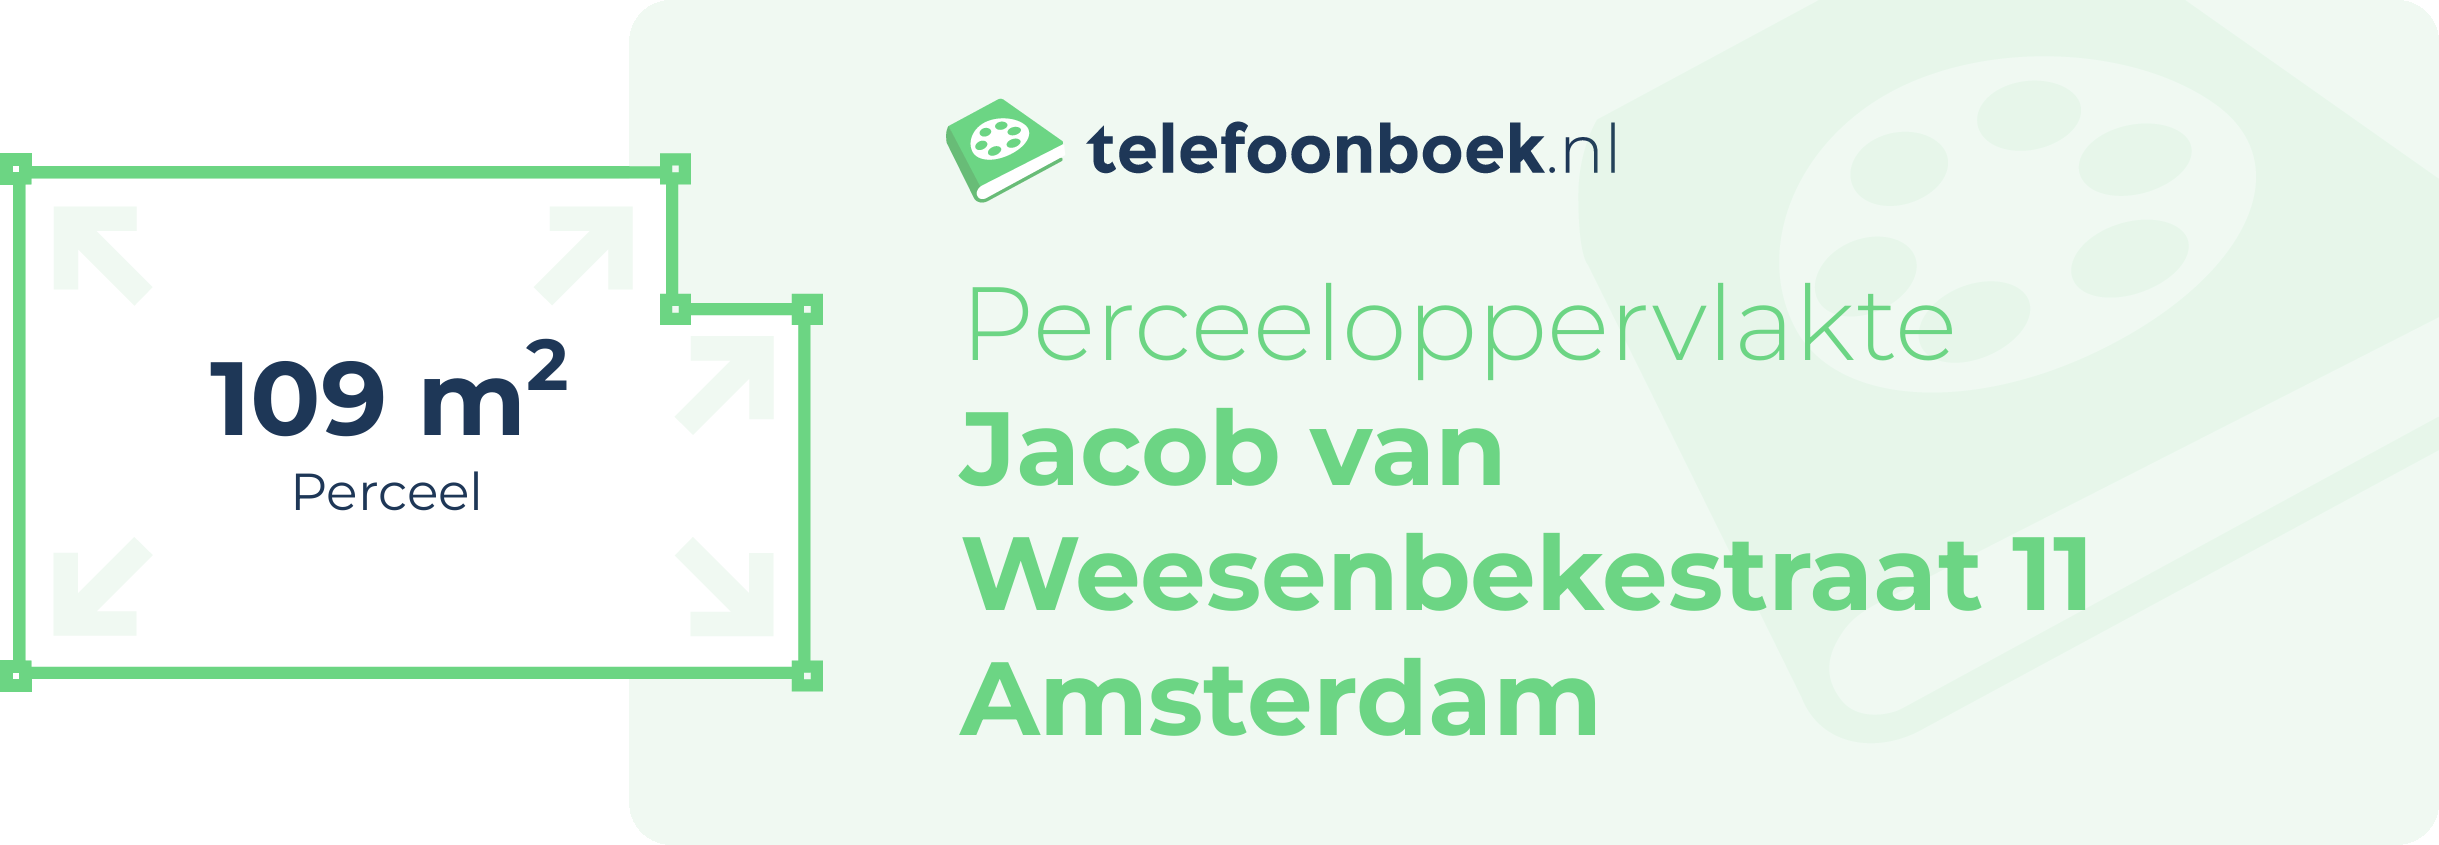 Perceeloppervlakte Jacob Van Weesenbekestraat 11 Amsterdam